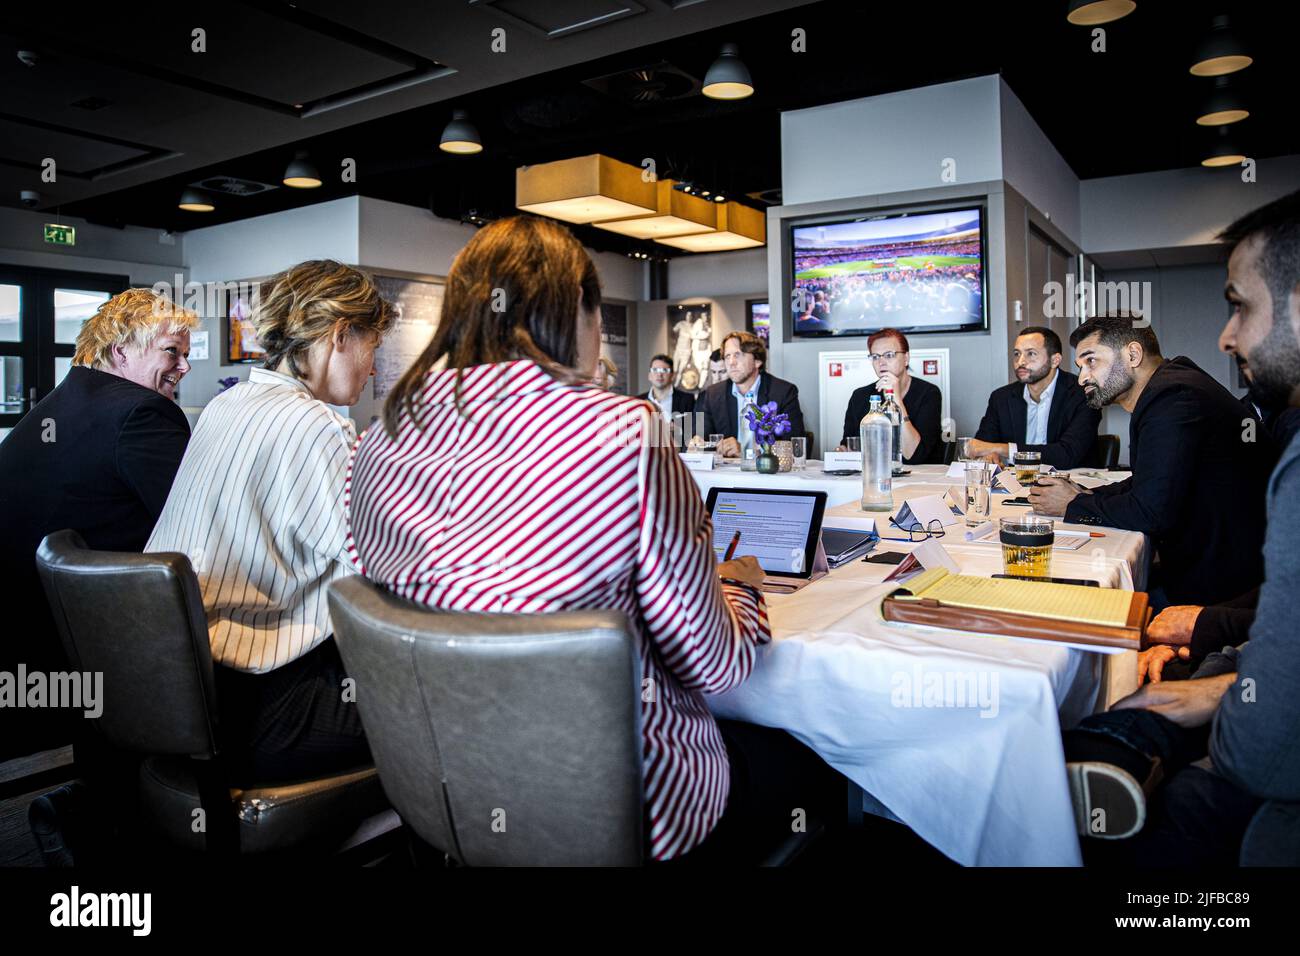 2022-07-01 14:26:31 ÁMSTERDAM - Hassan Al Zawadi, secretario general del comité organizador de la Copa del Mundo en Qatar, durante una reunión en el Johan Cruijff Arena. ANP RAMON VAN FLYMEN netherlands Out - belgium Out Foto de stock